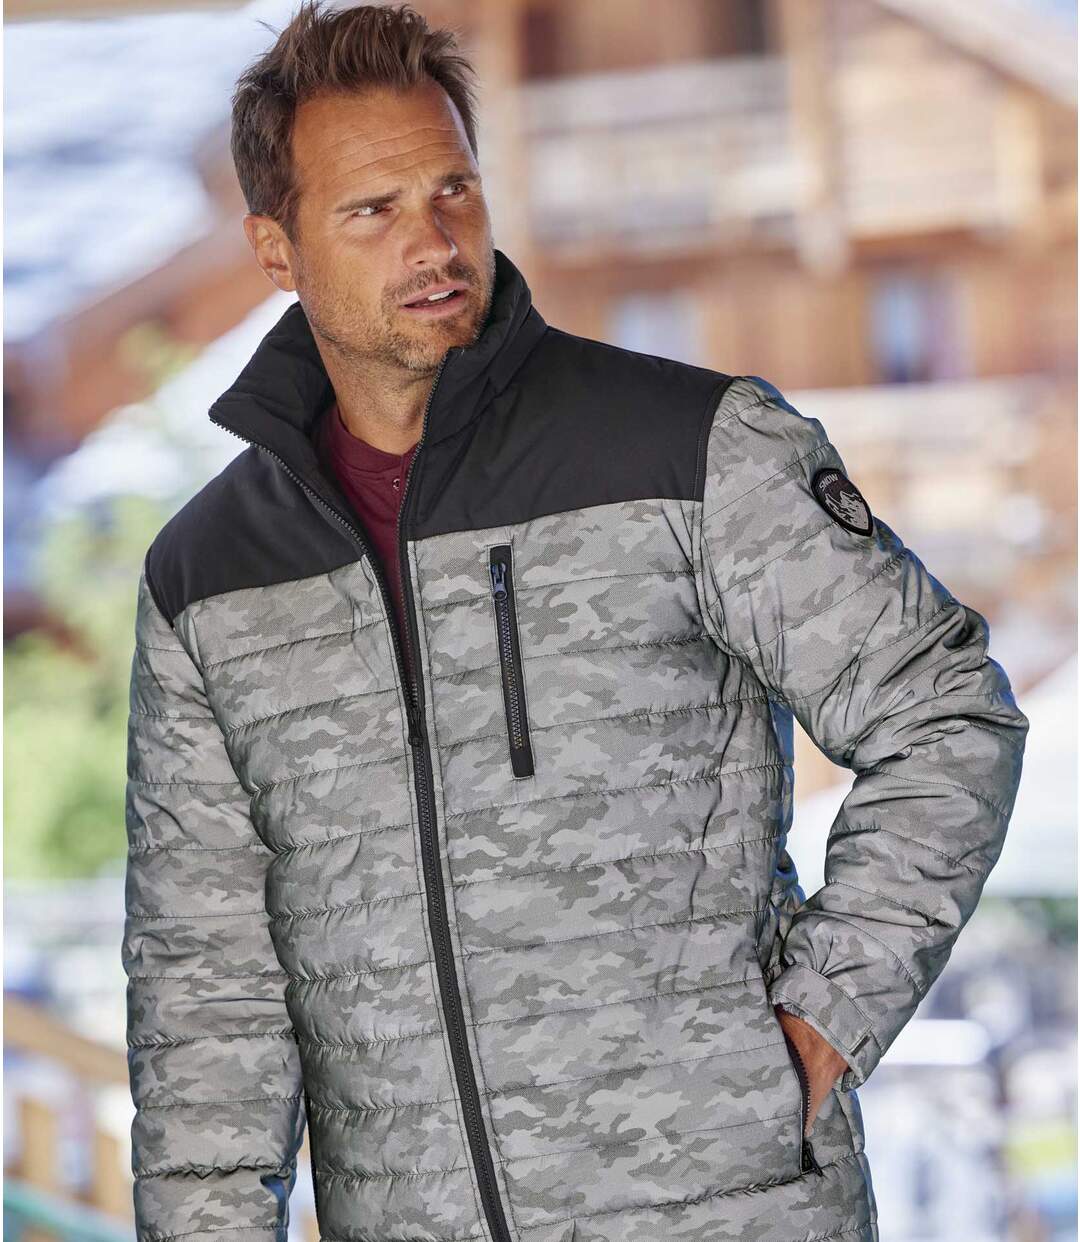 Dwukolorowa, pikowana kurtka z odpinanym kapturem Snow Atlas For Men